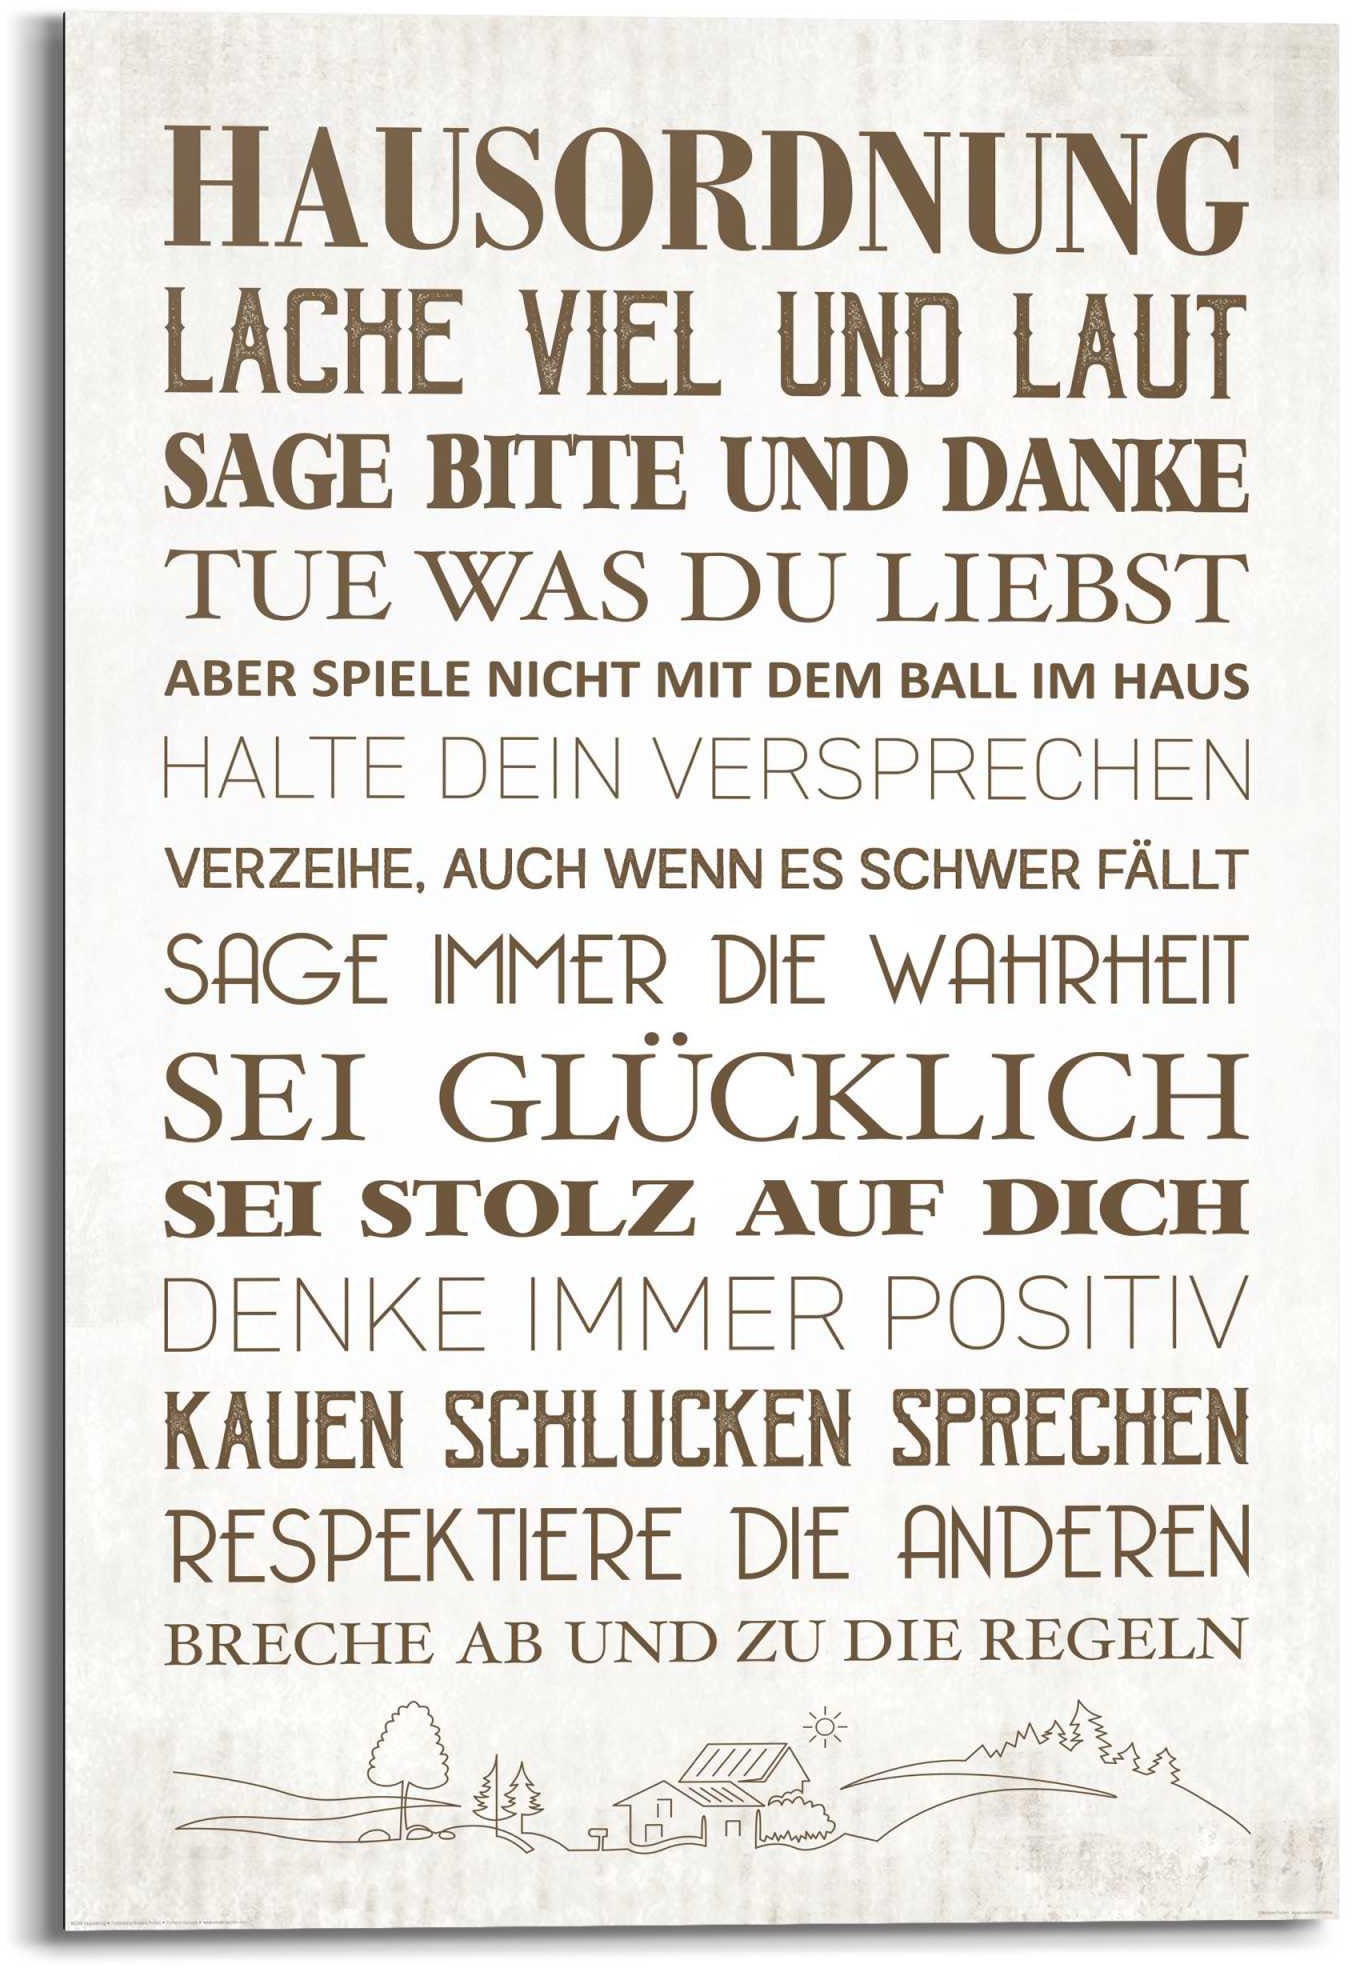 Glück Zuhause - »Wandbild Schriftzug, auf St.) - Raten Positiv«, Reinders! bestellen Familien - Wandbild (1 Hausordnung